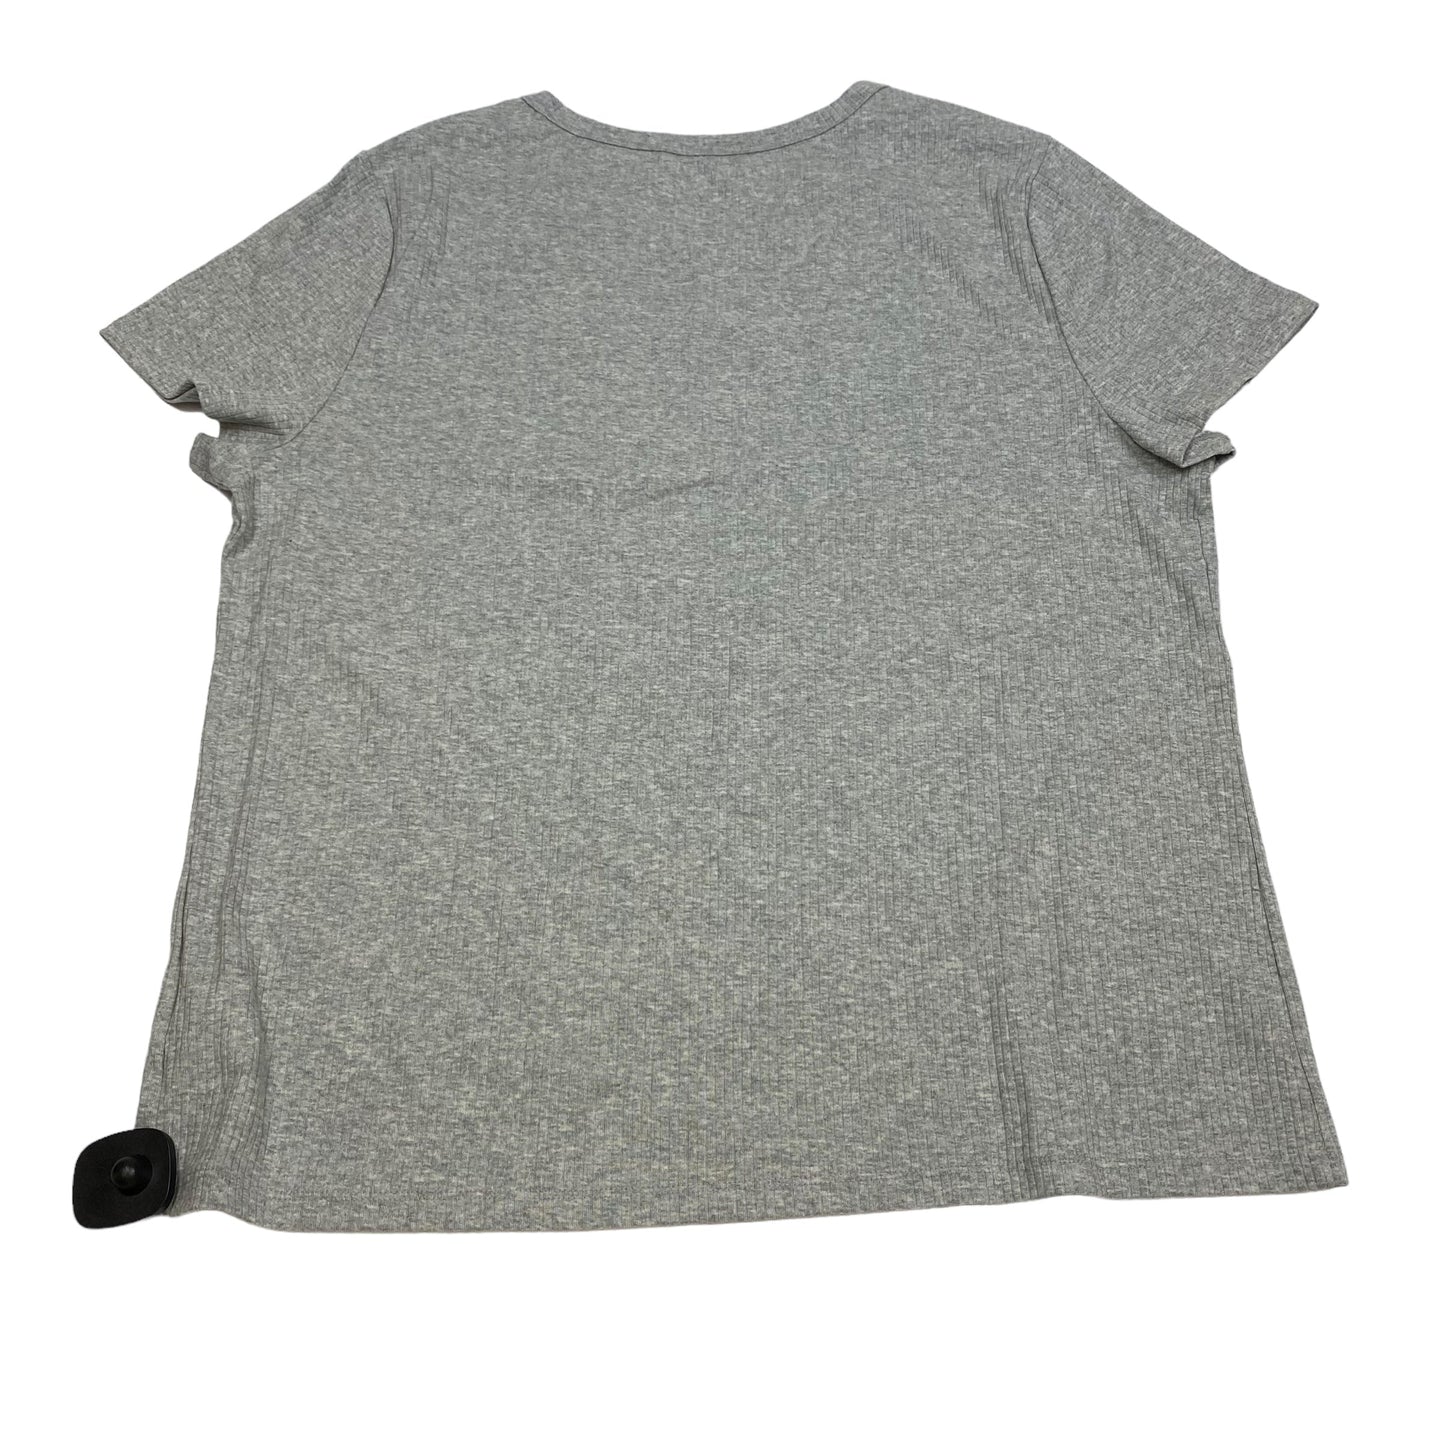 Grey Top Short Sleeve Basic Gap, Size Xxl